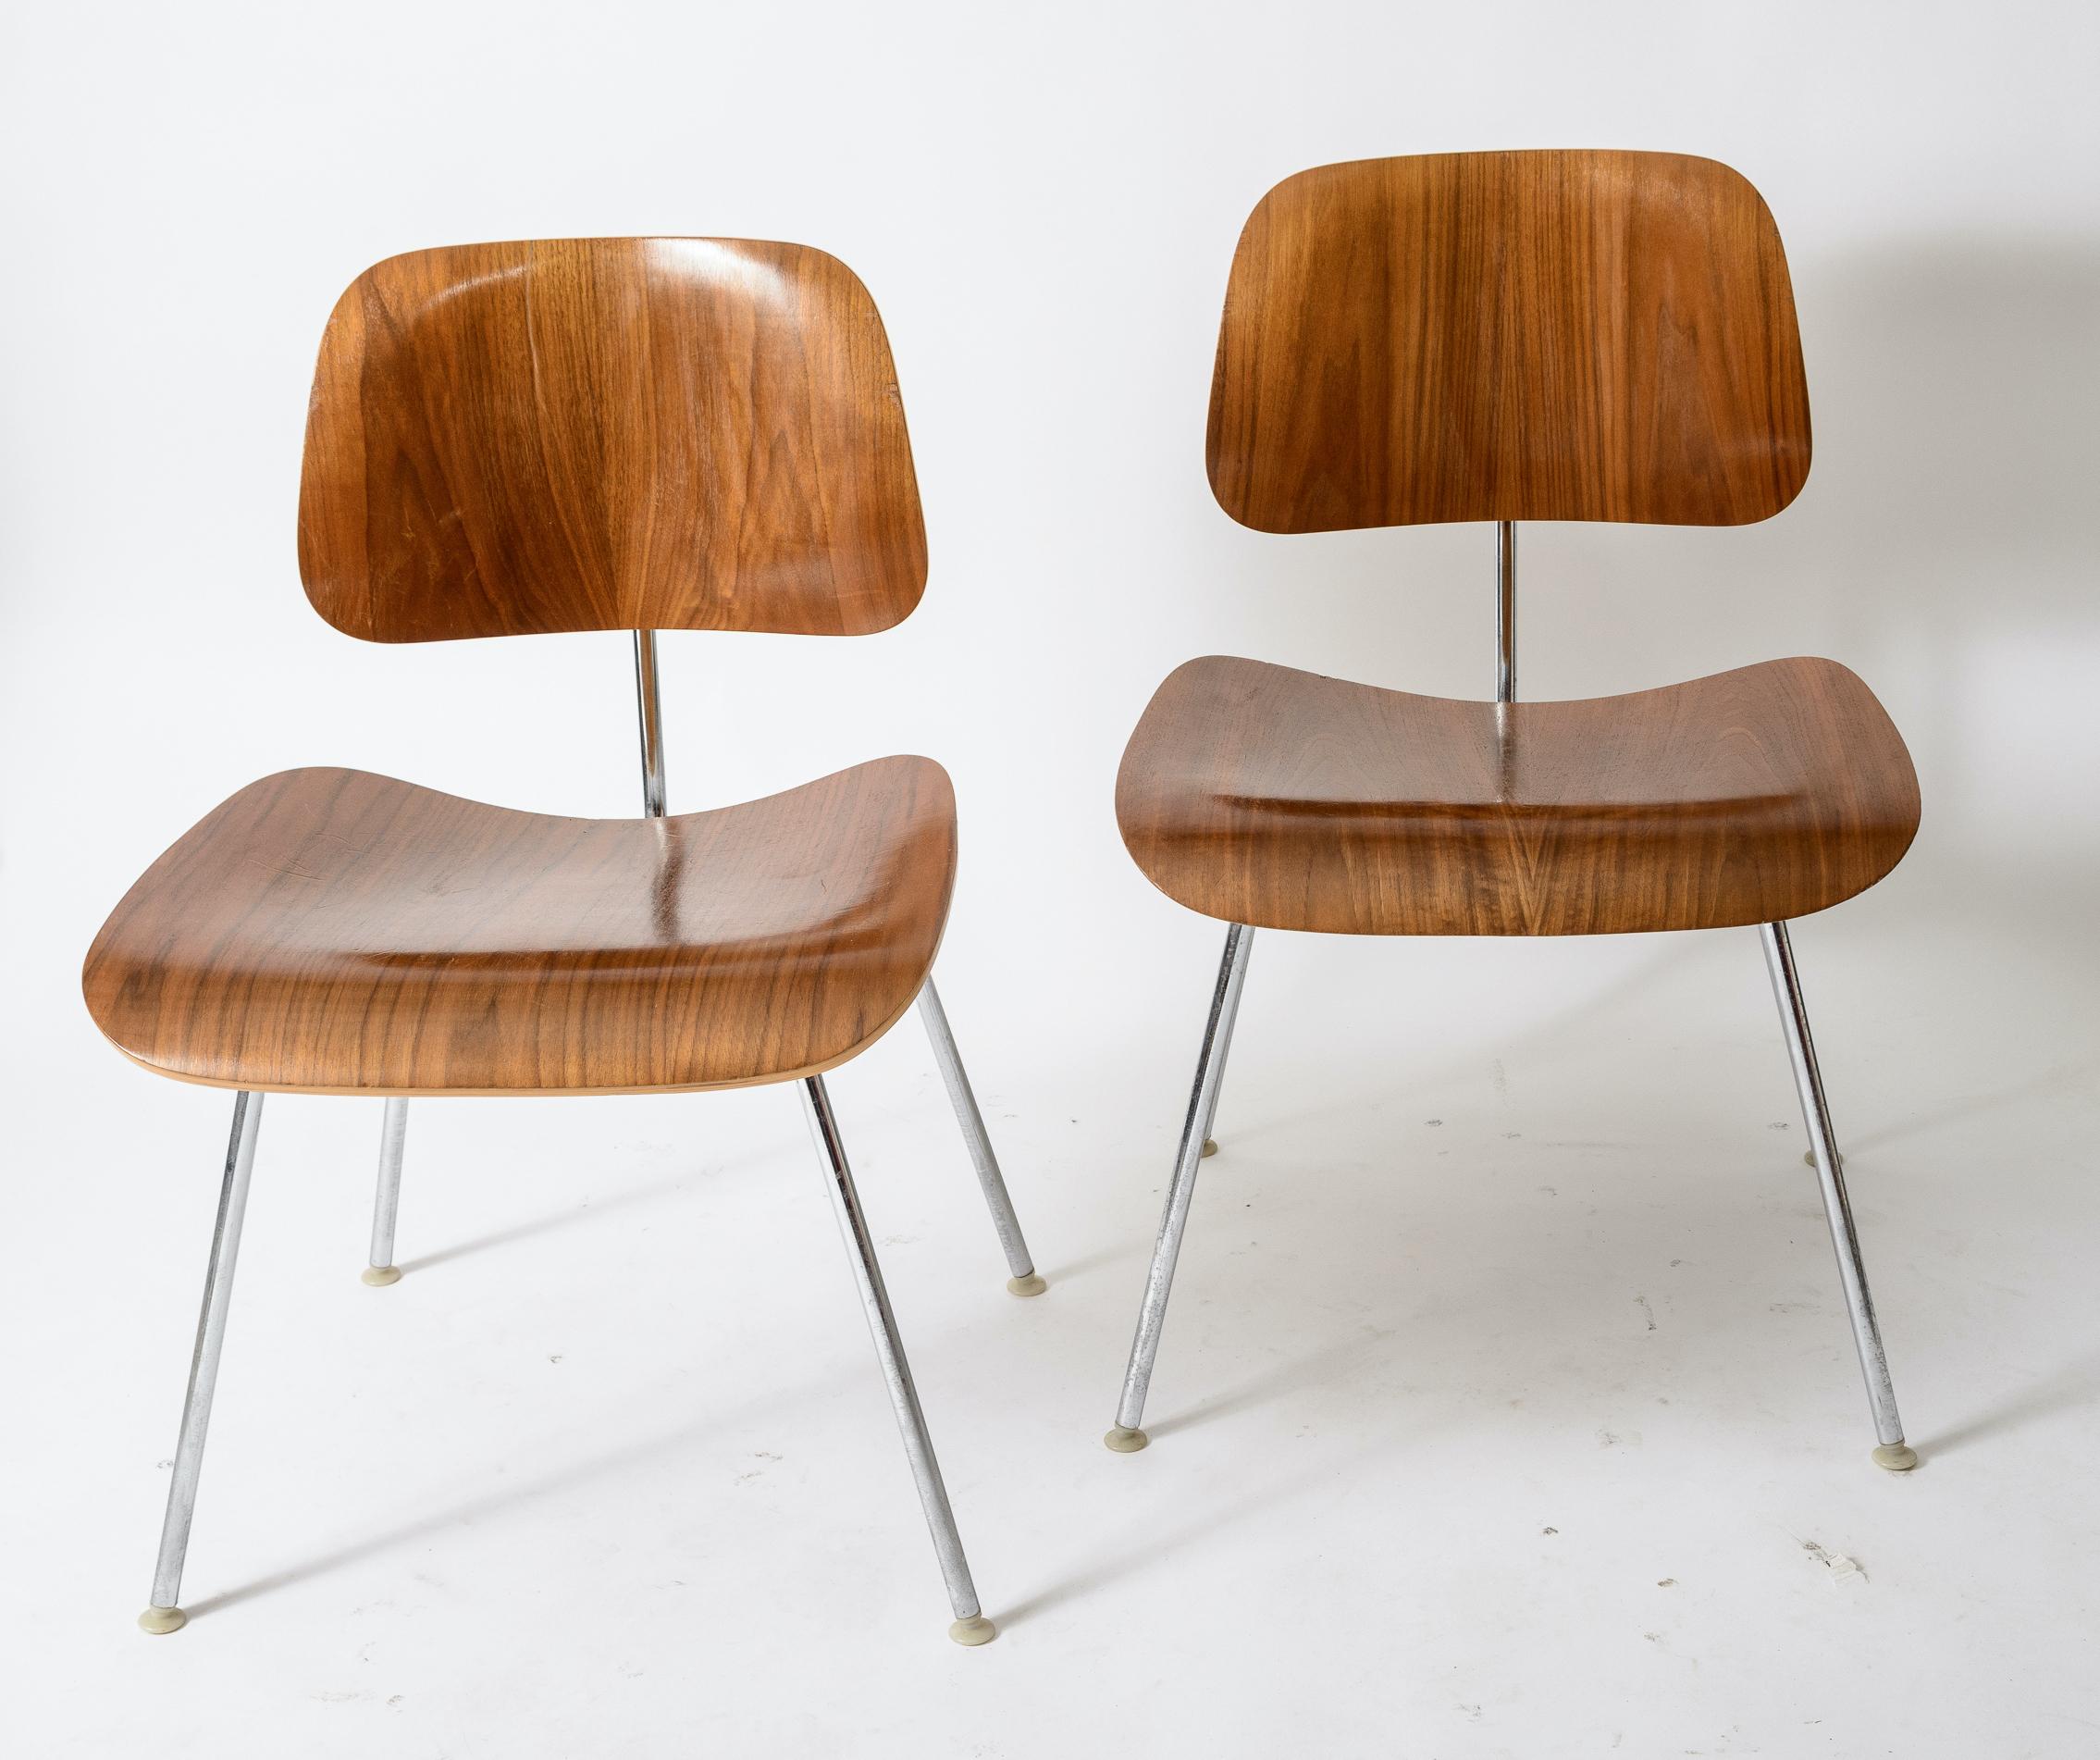 Ein Satz von 6 Eames DCM Stühlen
Sitze und Rückenlehnen aus Nussbaumholz
Gutes Narbenbild
1970er Produktion